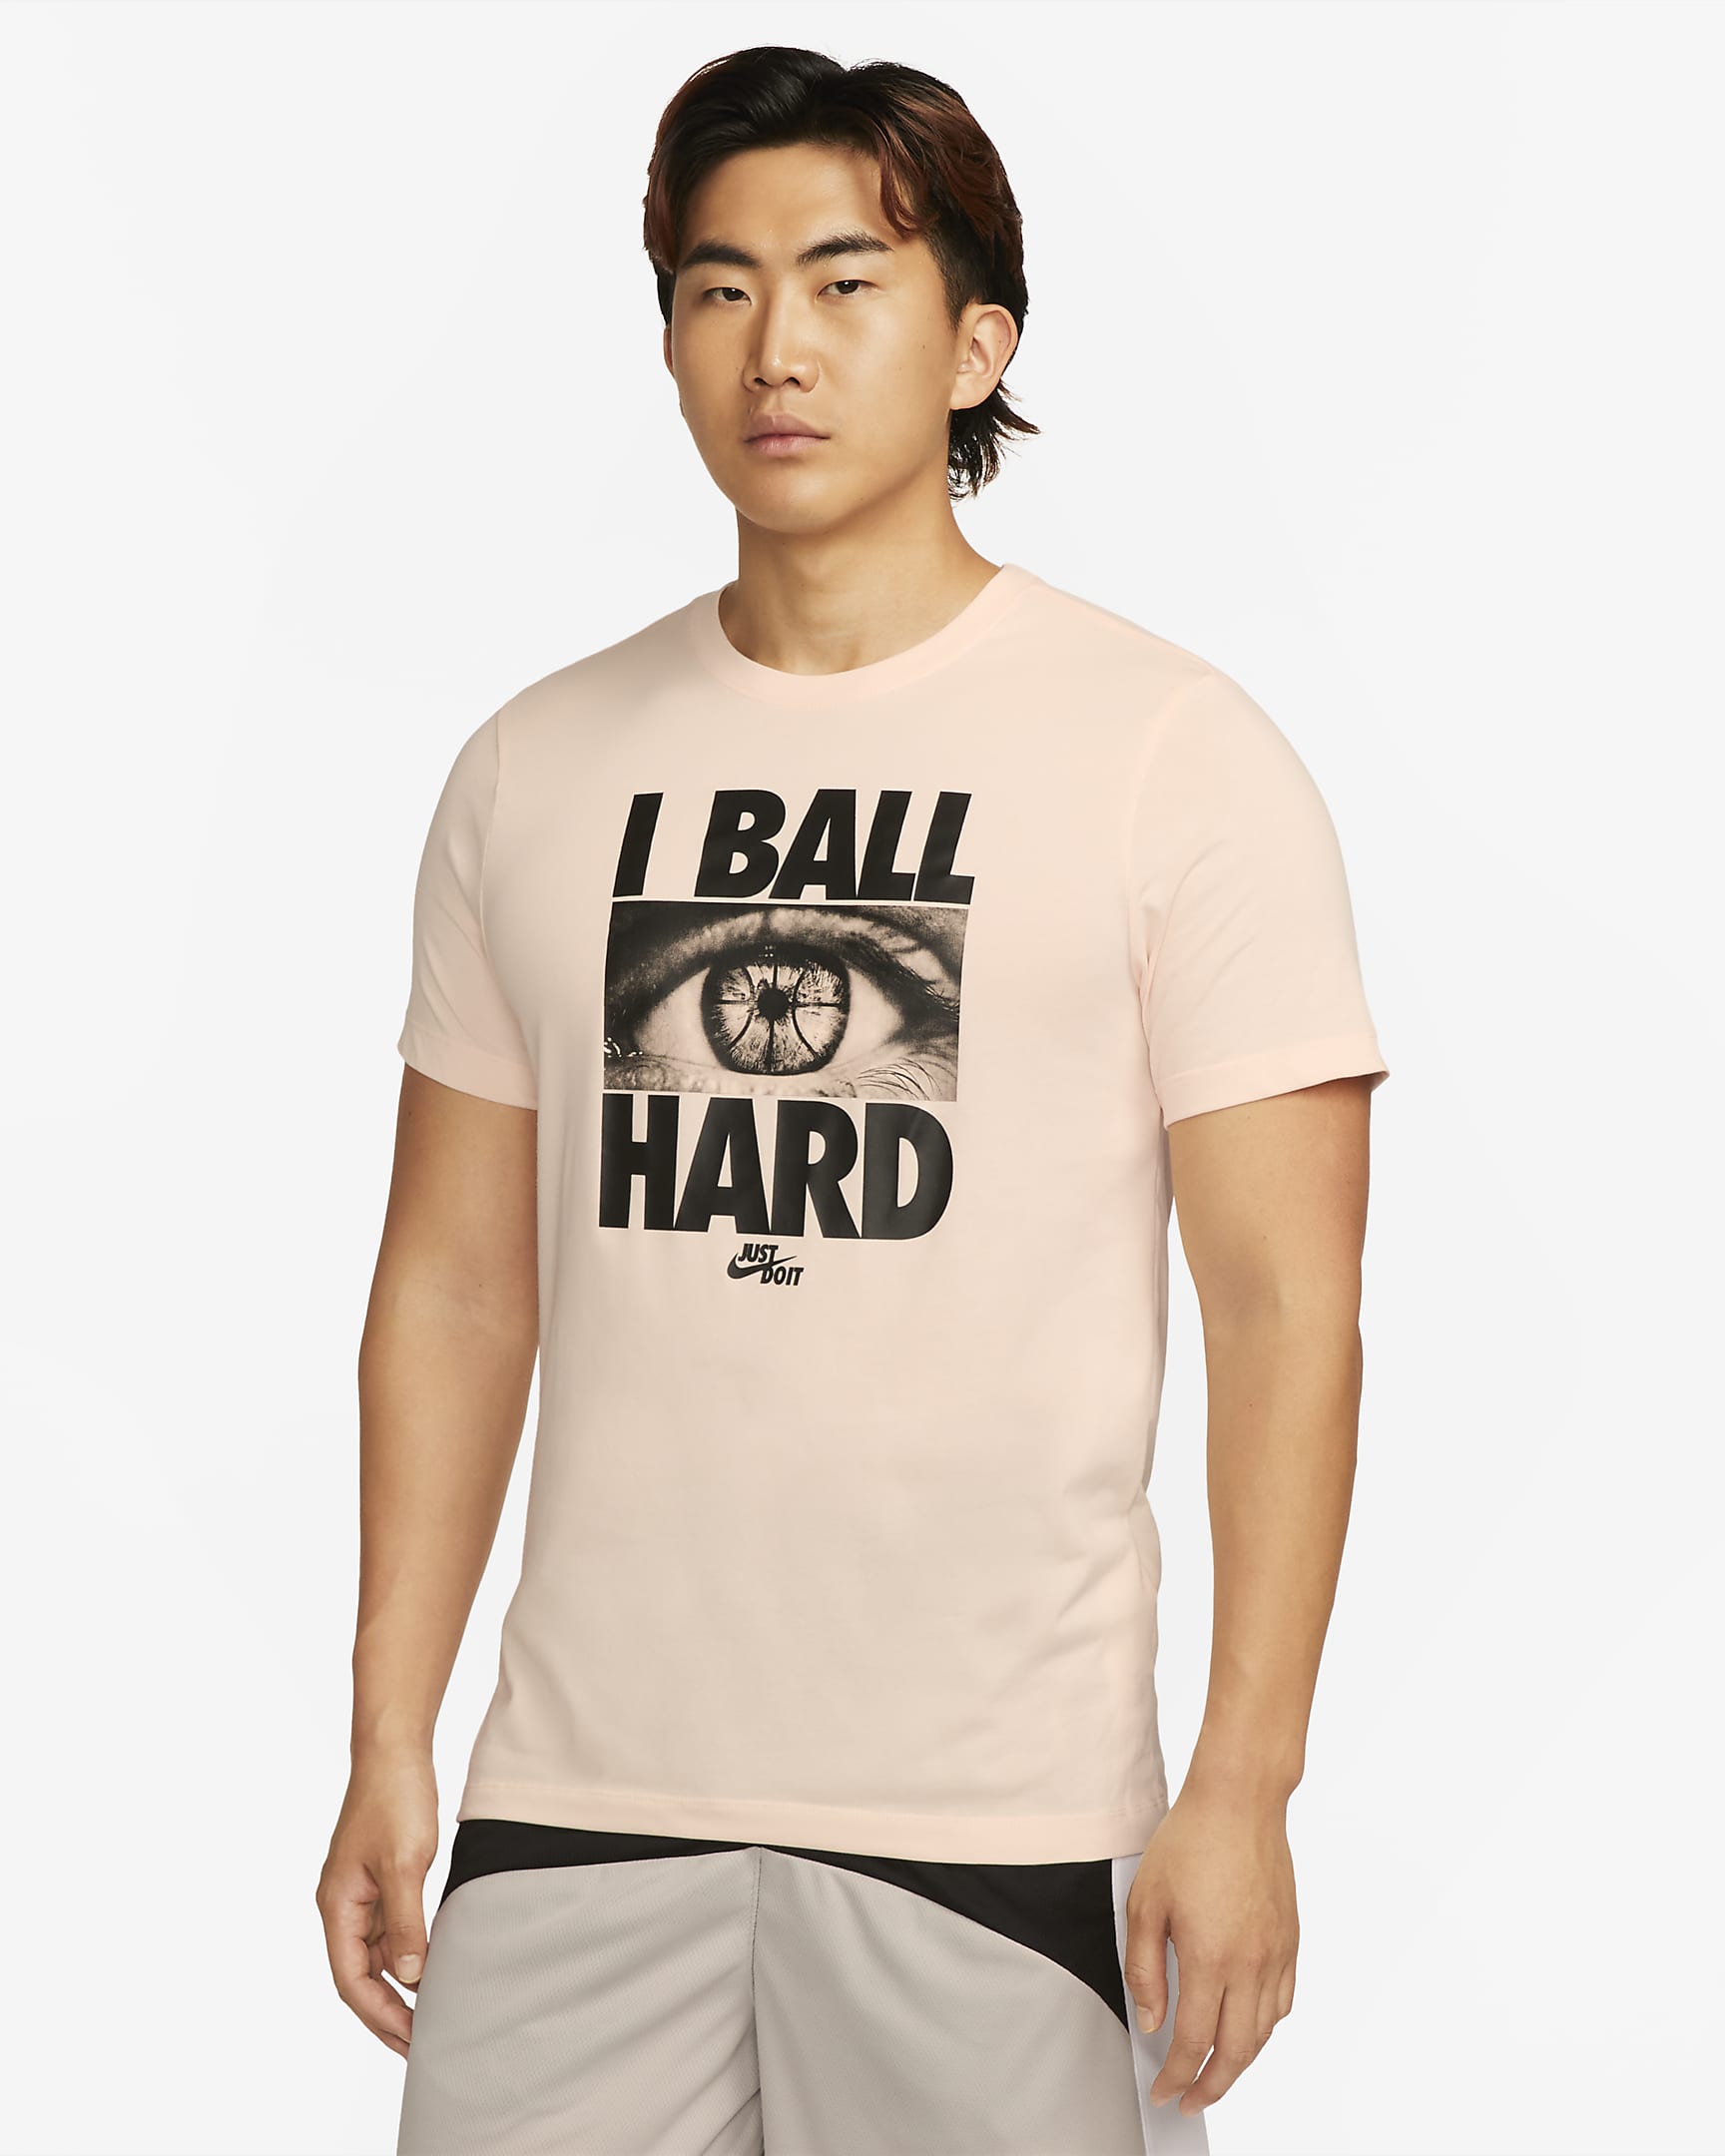 Tee basketball I ball hard